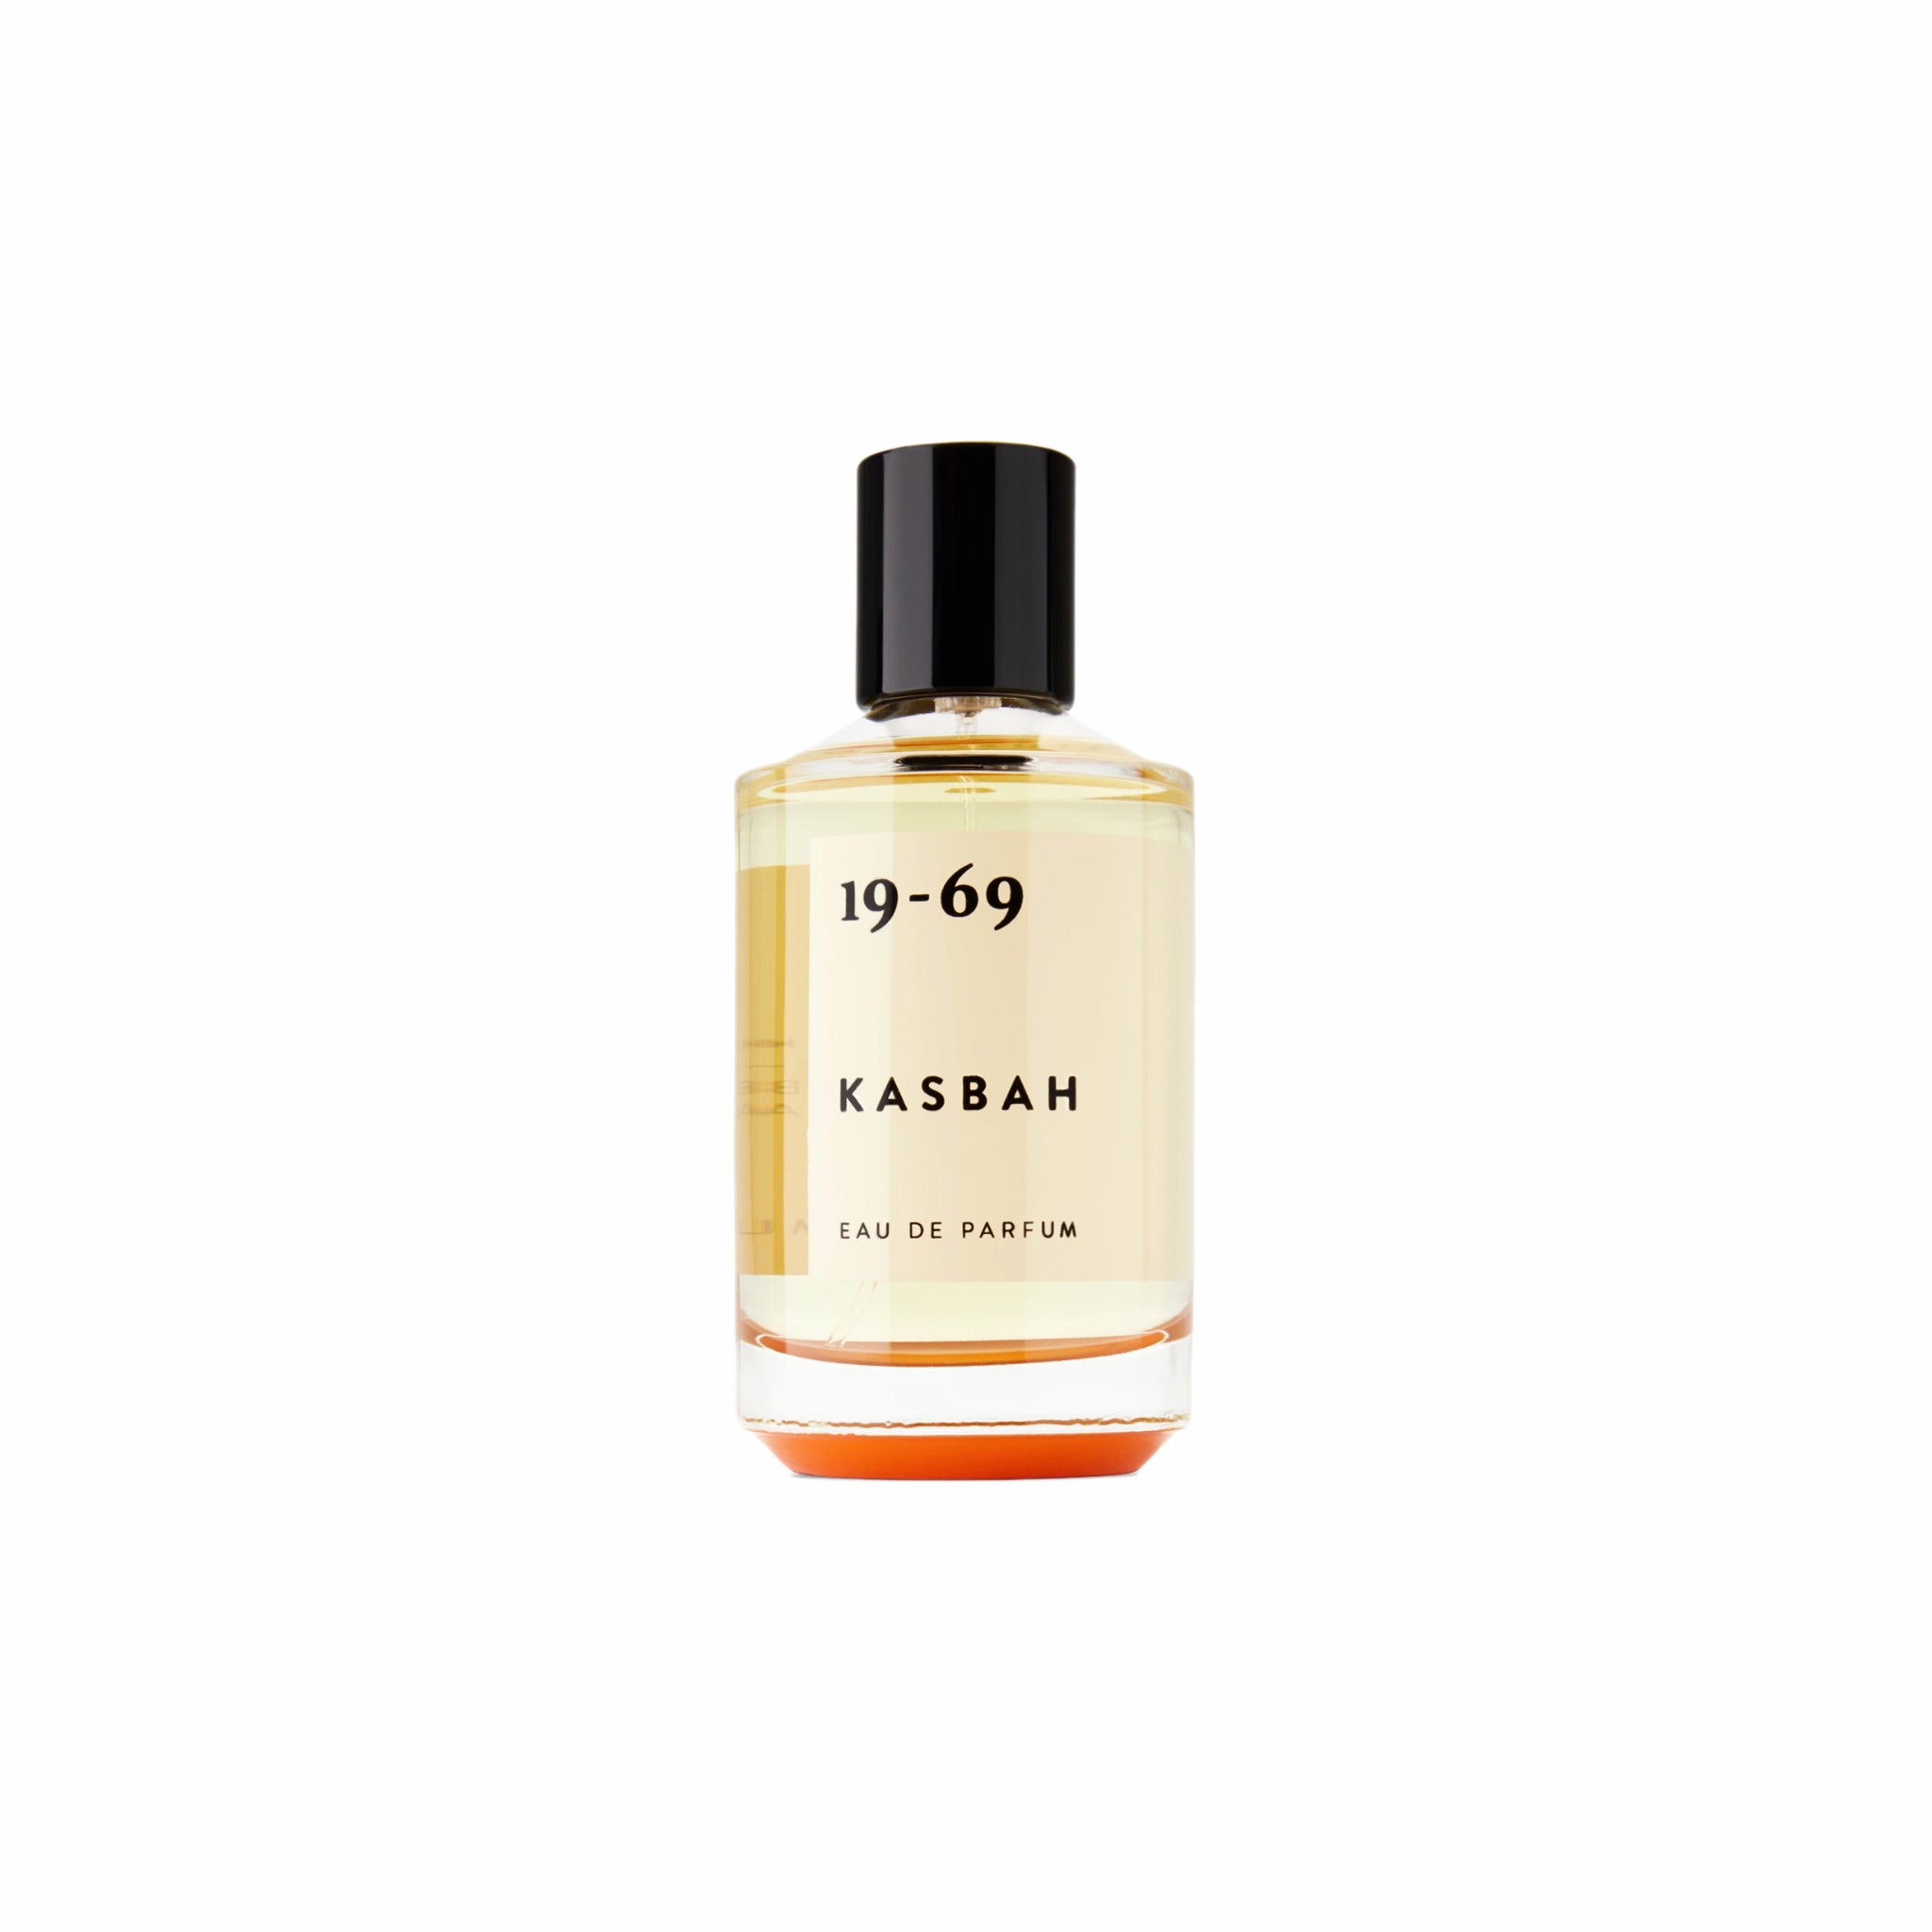 19-69, 19-69 Kasbah Eau de Parfum (30 ml)